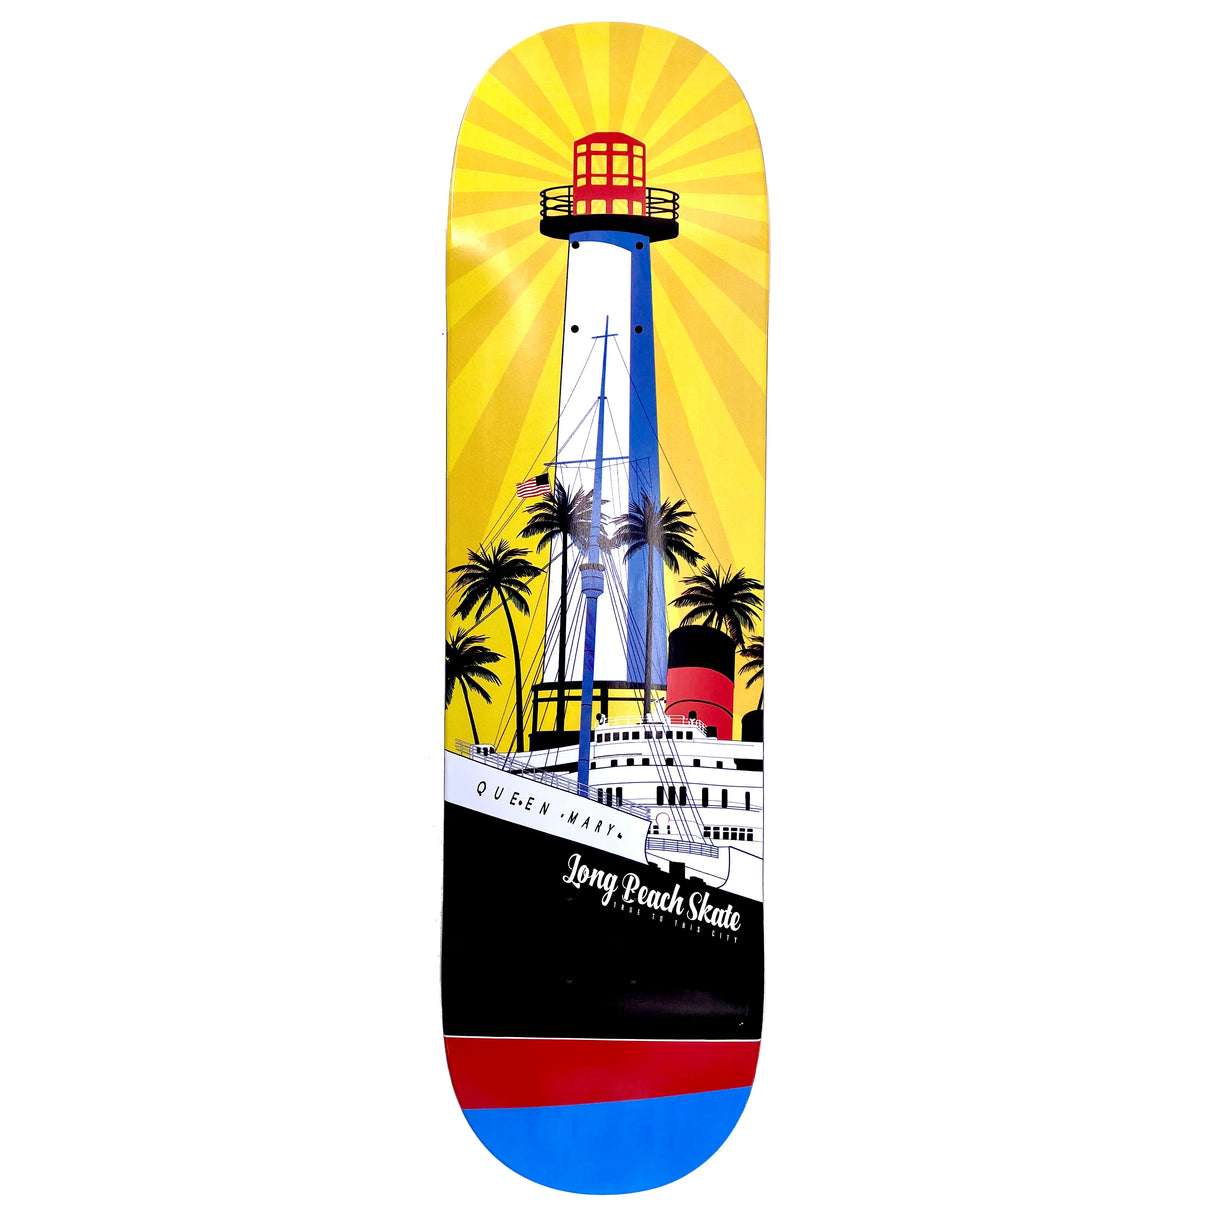 Long Beach Skate Co. "Rising Sun on Light Mary" Gold Red Blue 8.0" Skateboard Deck